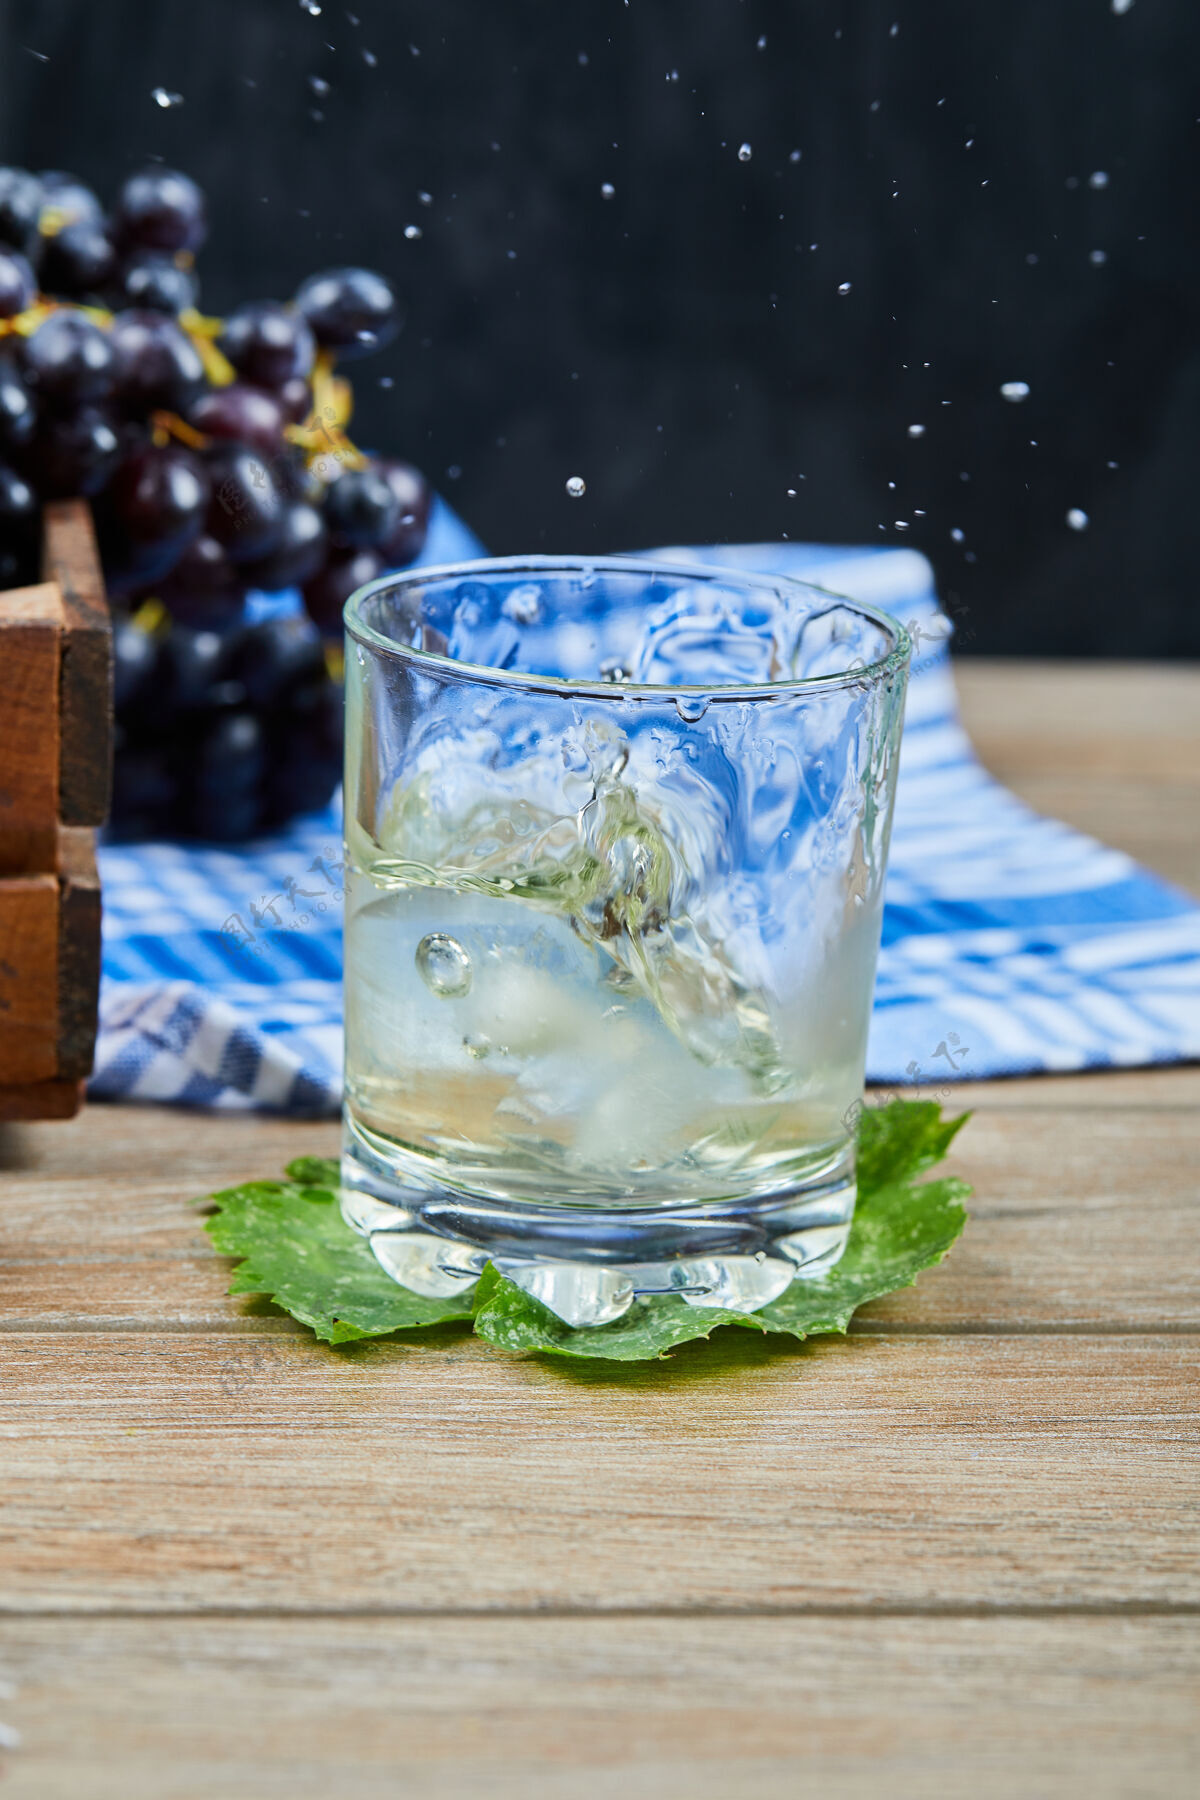 叶一杯白葡萄酒放在木桌上 上面放着葡萄高质量的照片饮料葡萄饮料